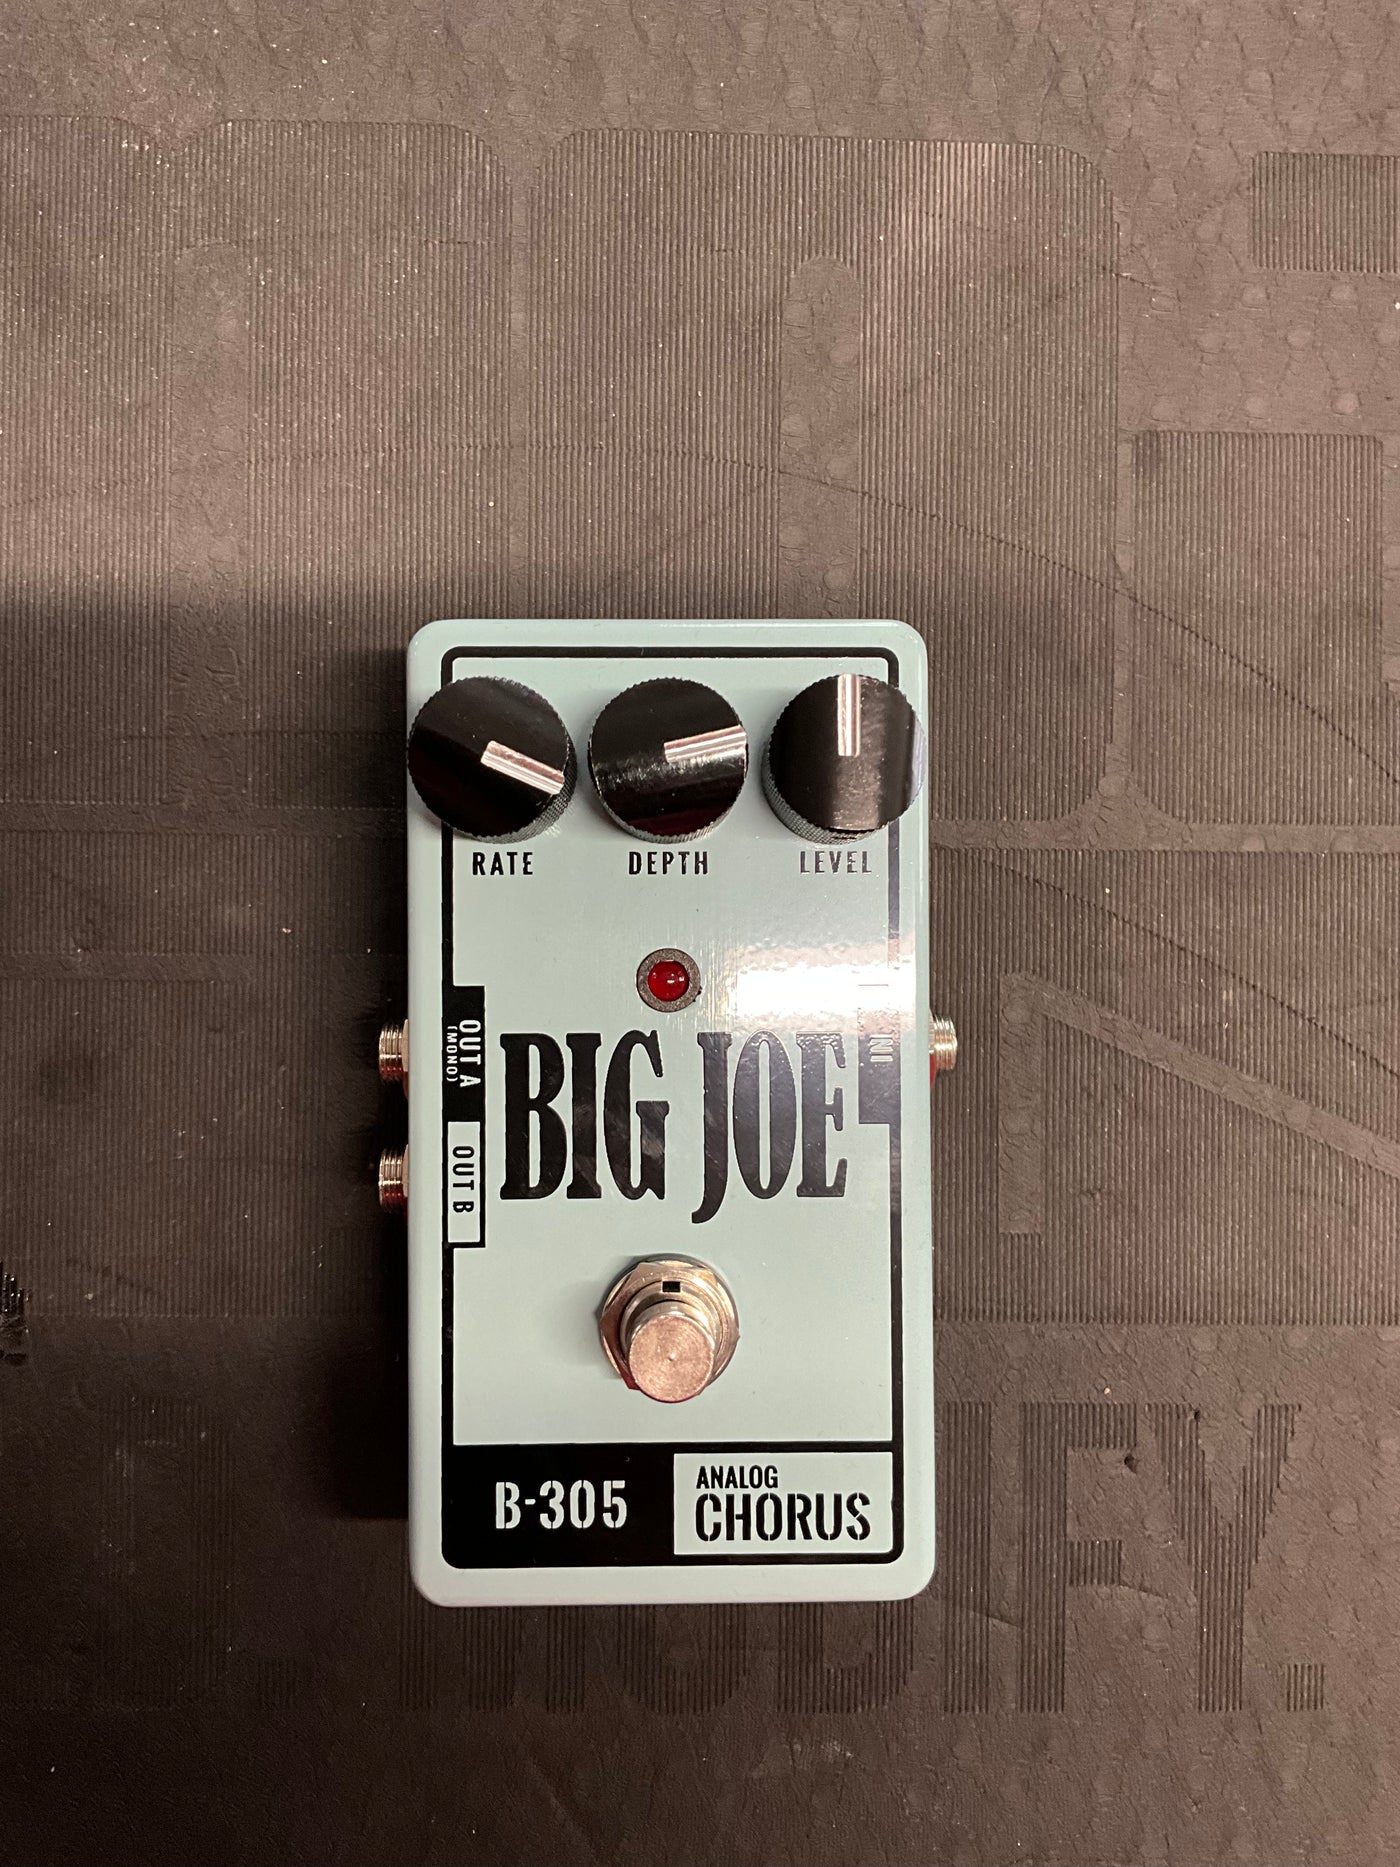 Big Joe Analog Chorus B-305